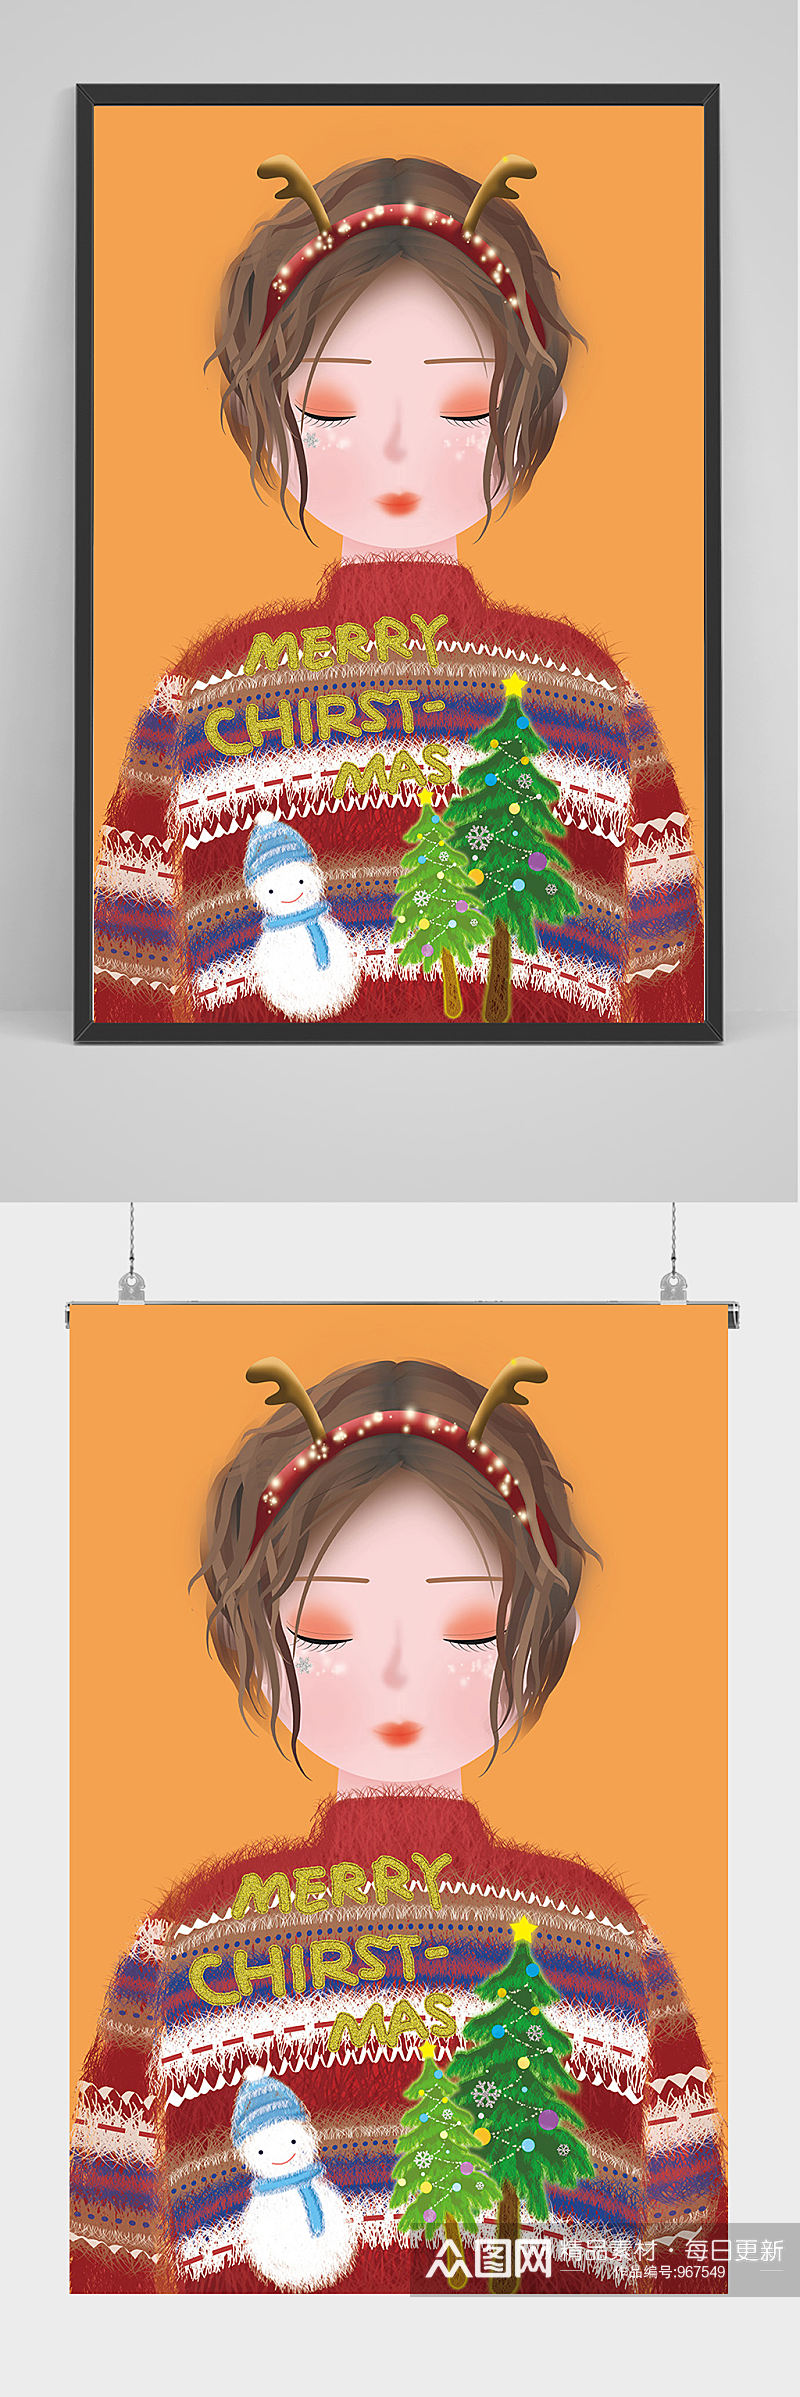 圣诞节女子和雪人插画设计素材